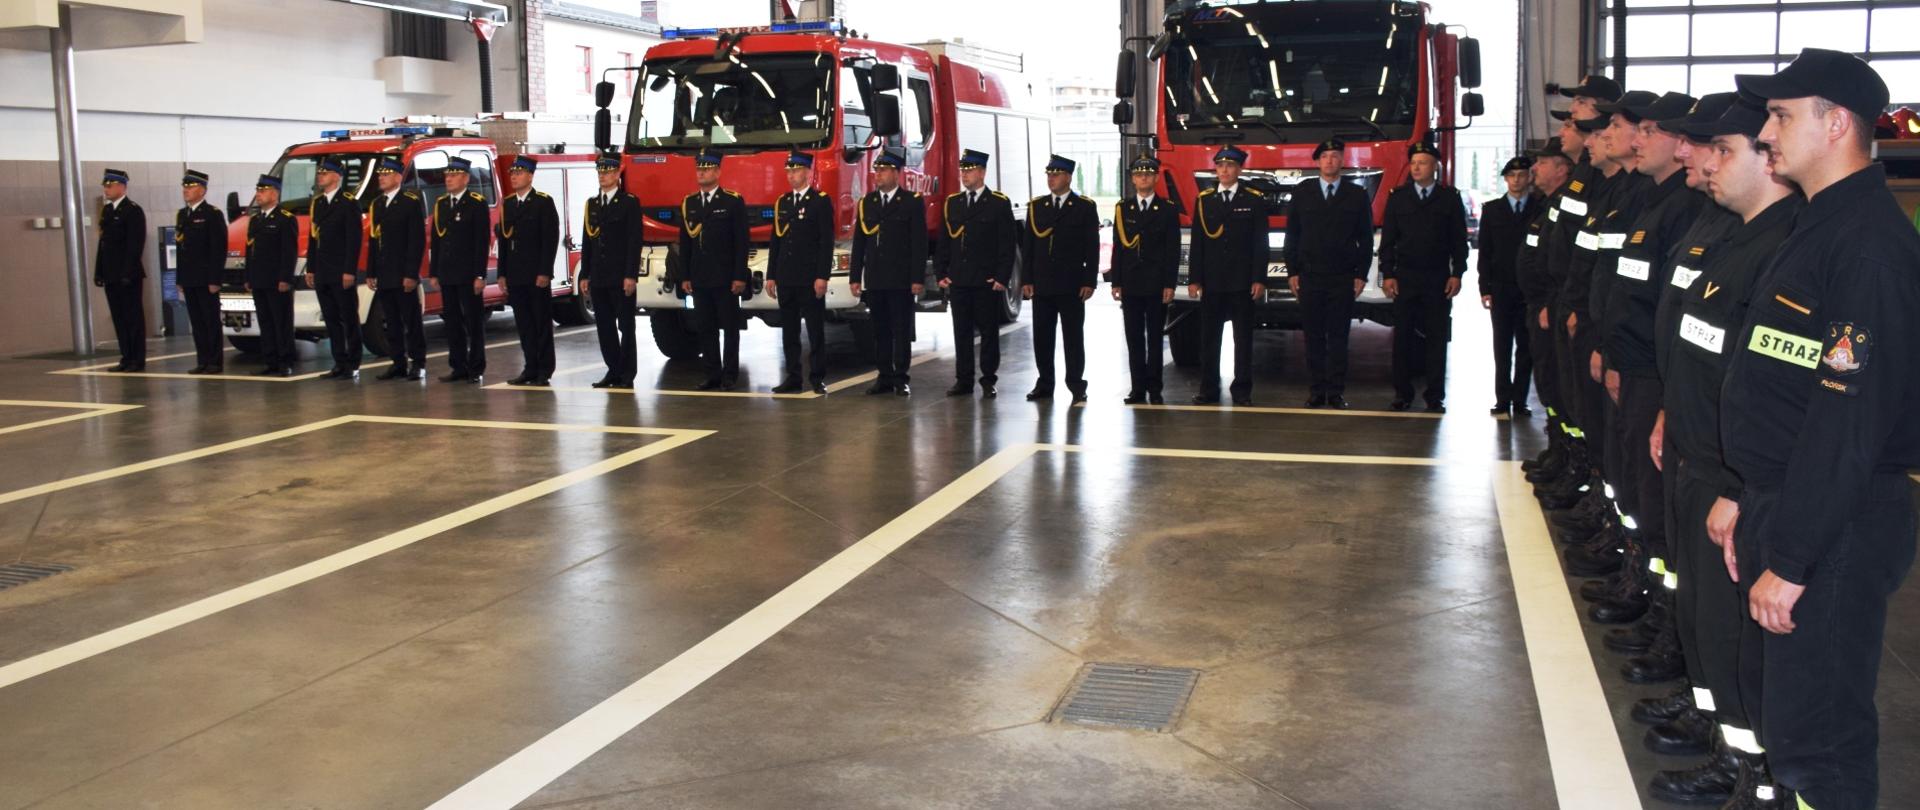 Zbiórka z okazji przejścia na zaopatrzenie emerytalne strażaka. W tle pododdział strażaków w mundurach wyjściowych koloru ciemnogranatowego stojący przed wozami strażackimi koloru czerwonego.